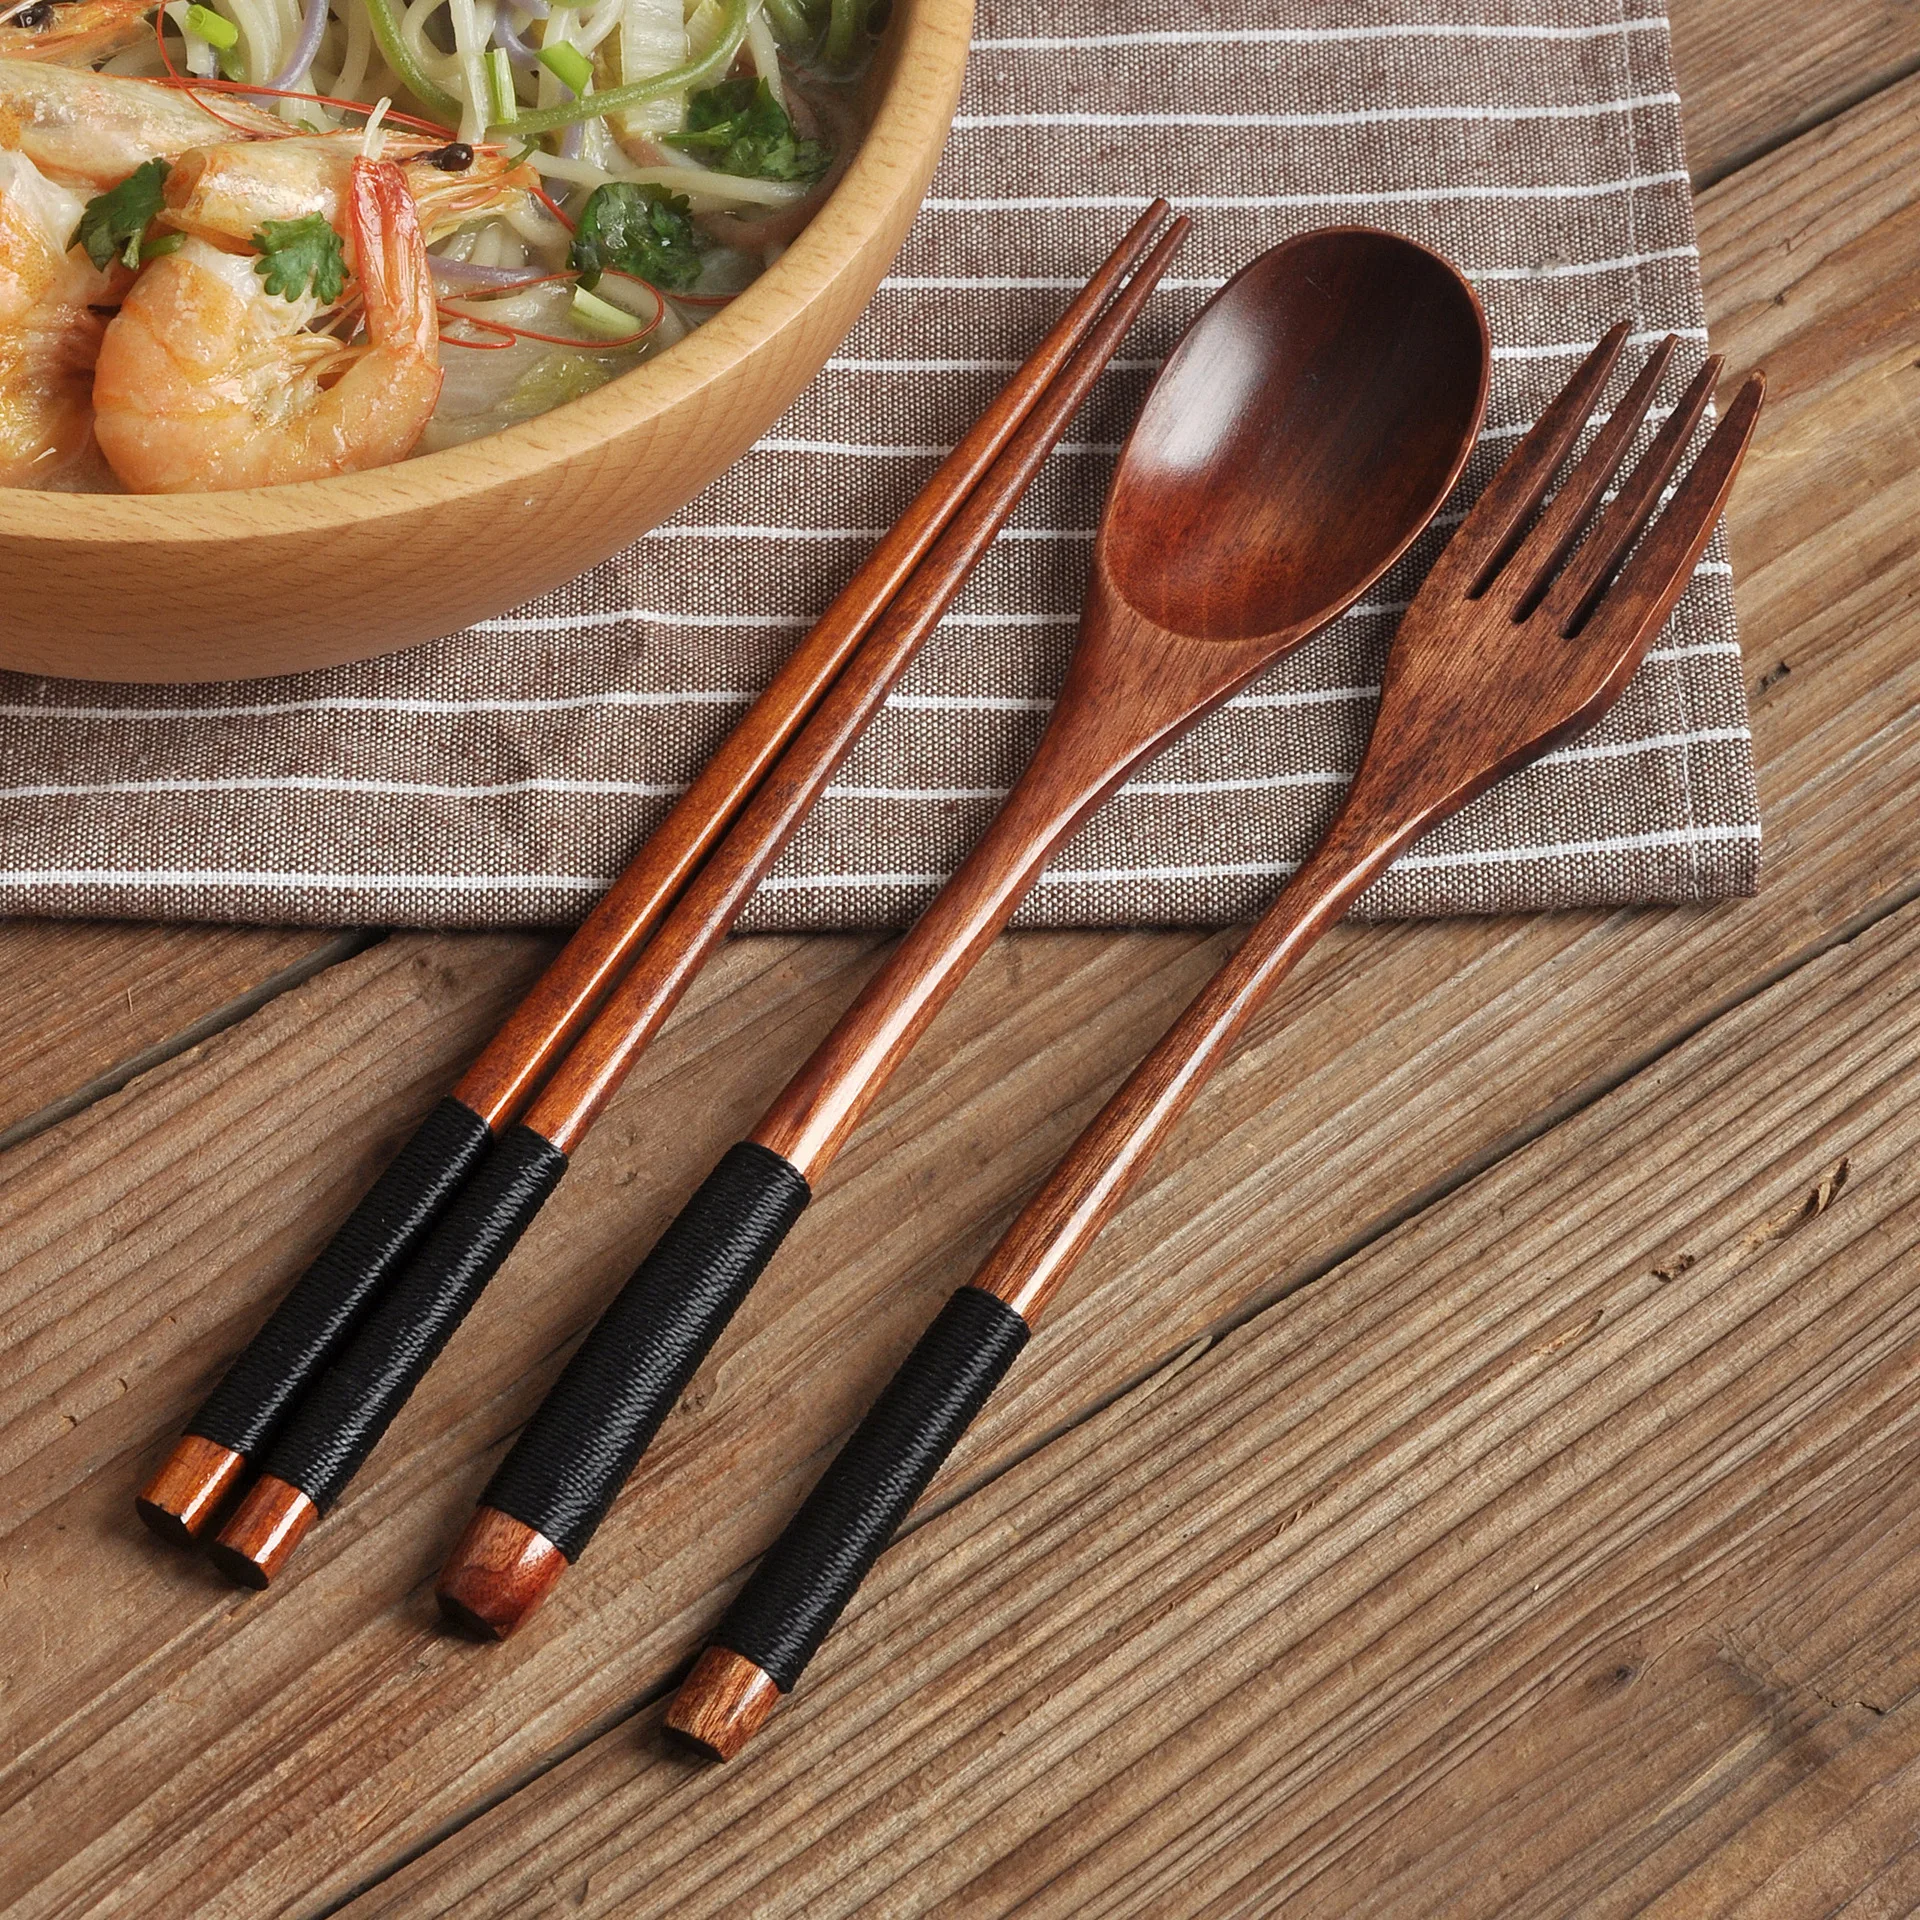 

Деревянные ложки, вилки, палочки для еды в японском стиле, набор из трех предметов из массива дерева, портативная посуда с длинной ручкой